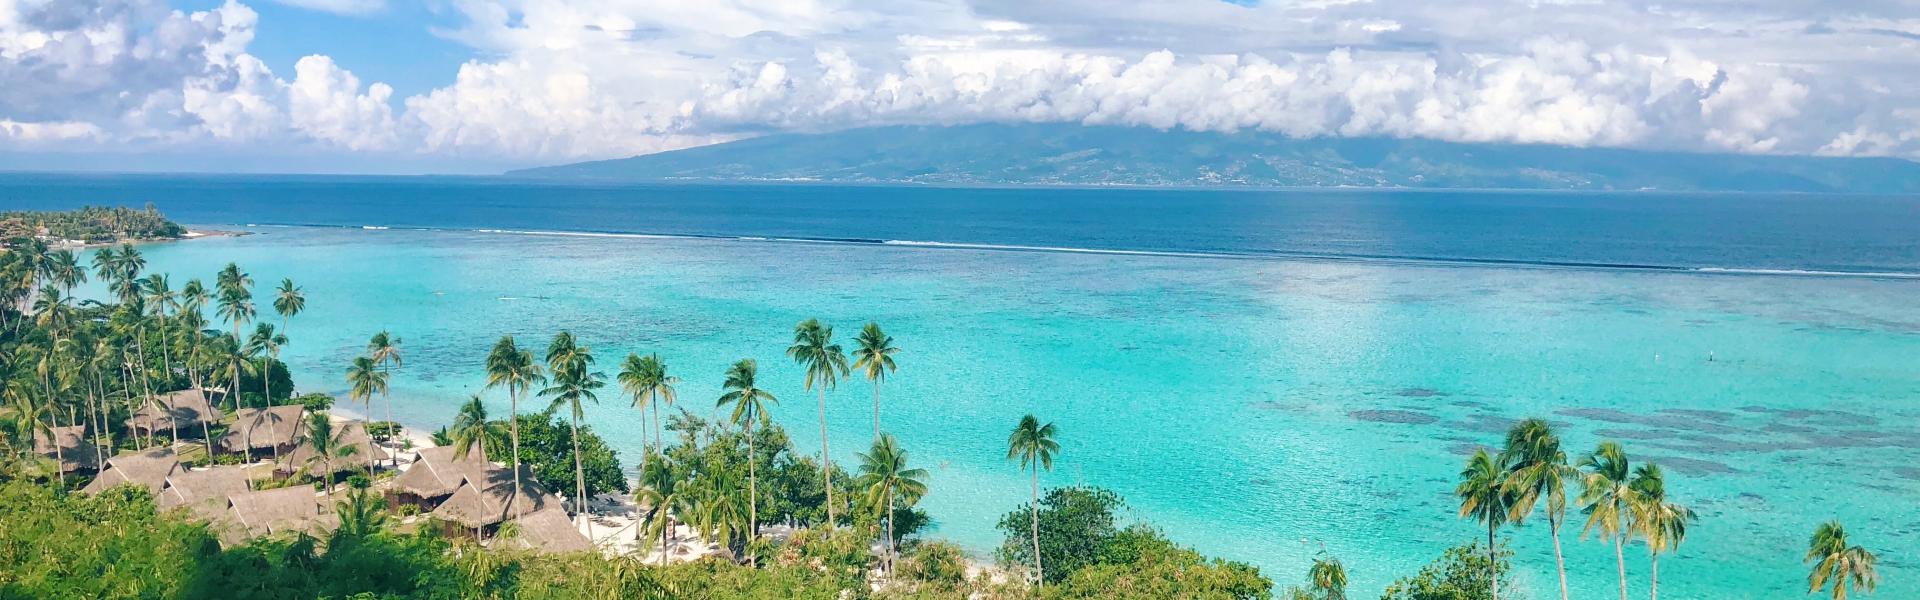 Locations de vacances et appartements à Tahiti - Wimdu